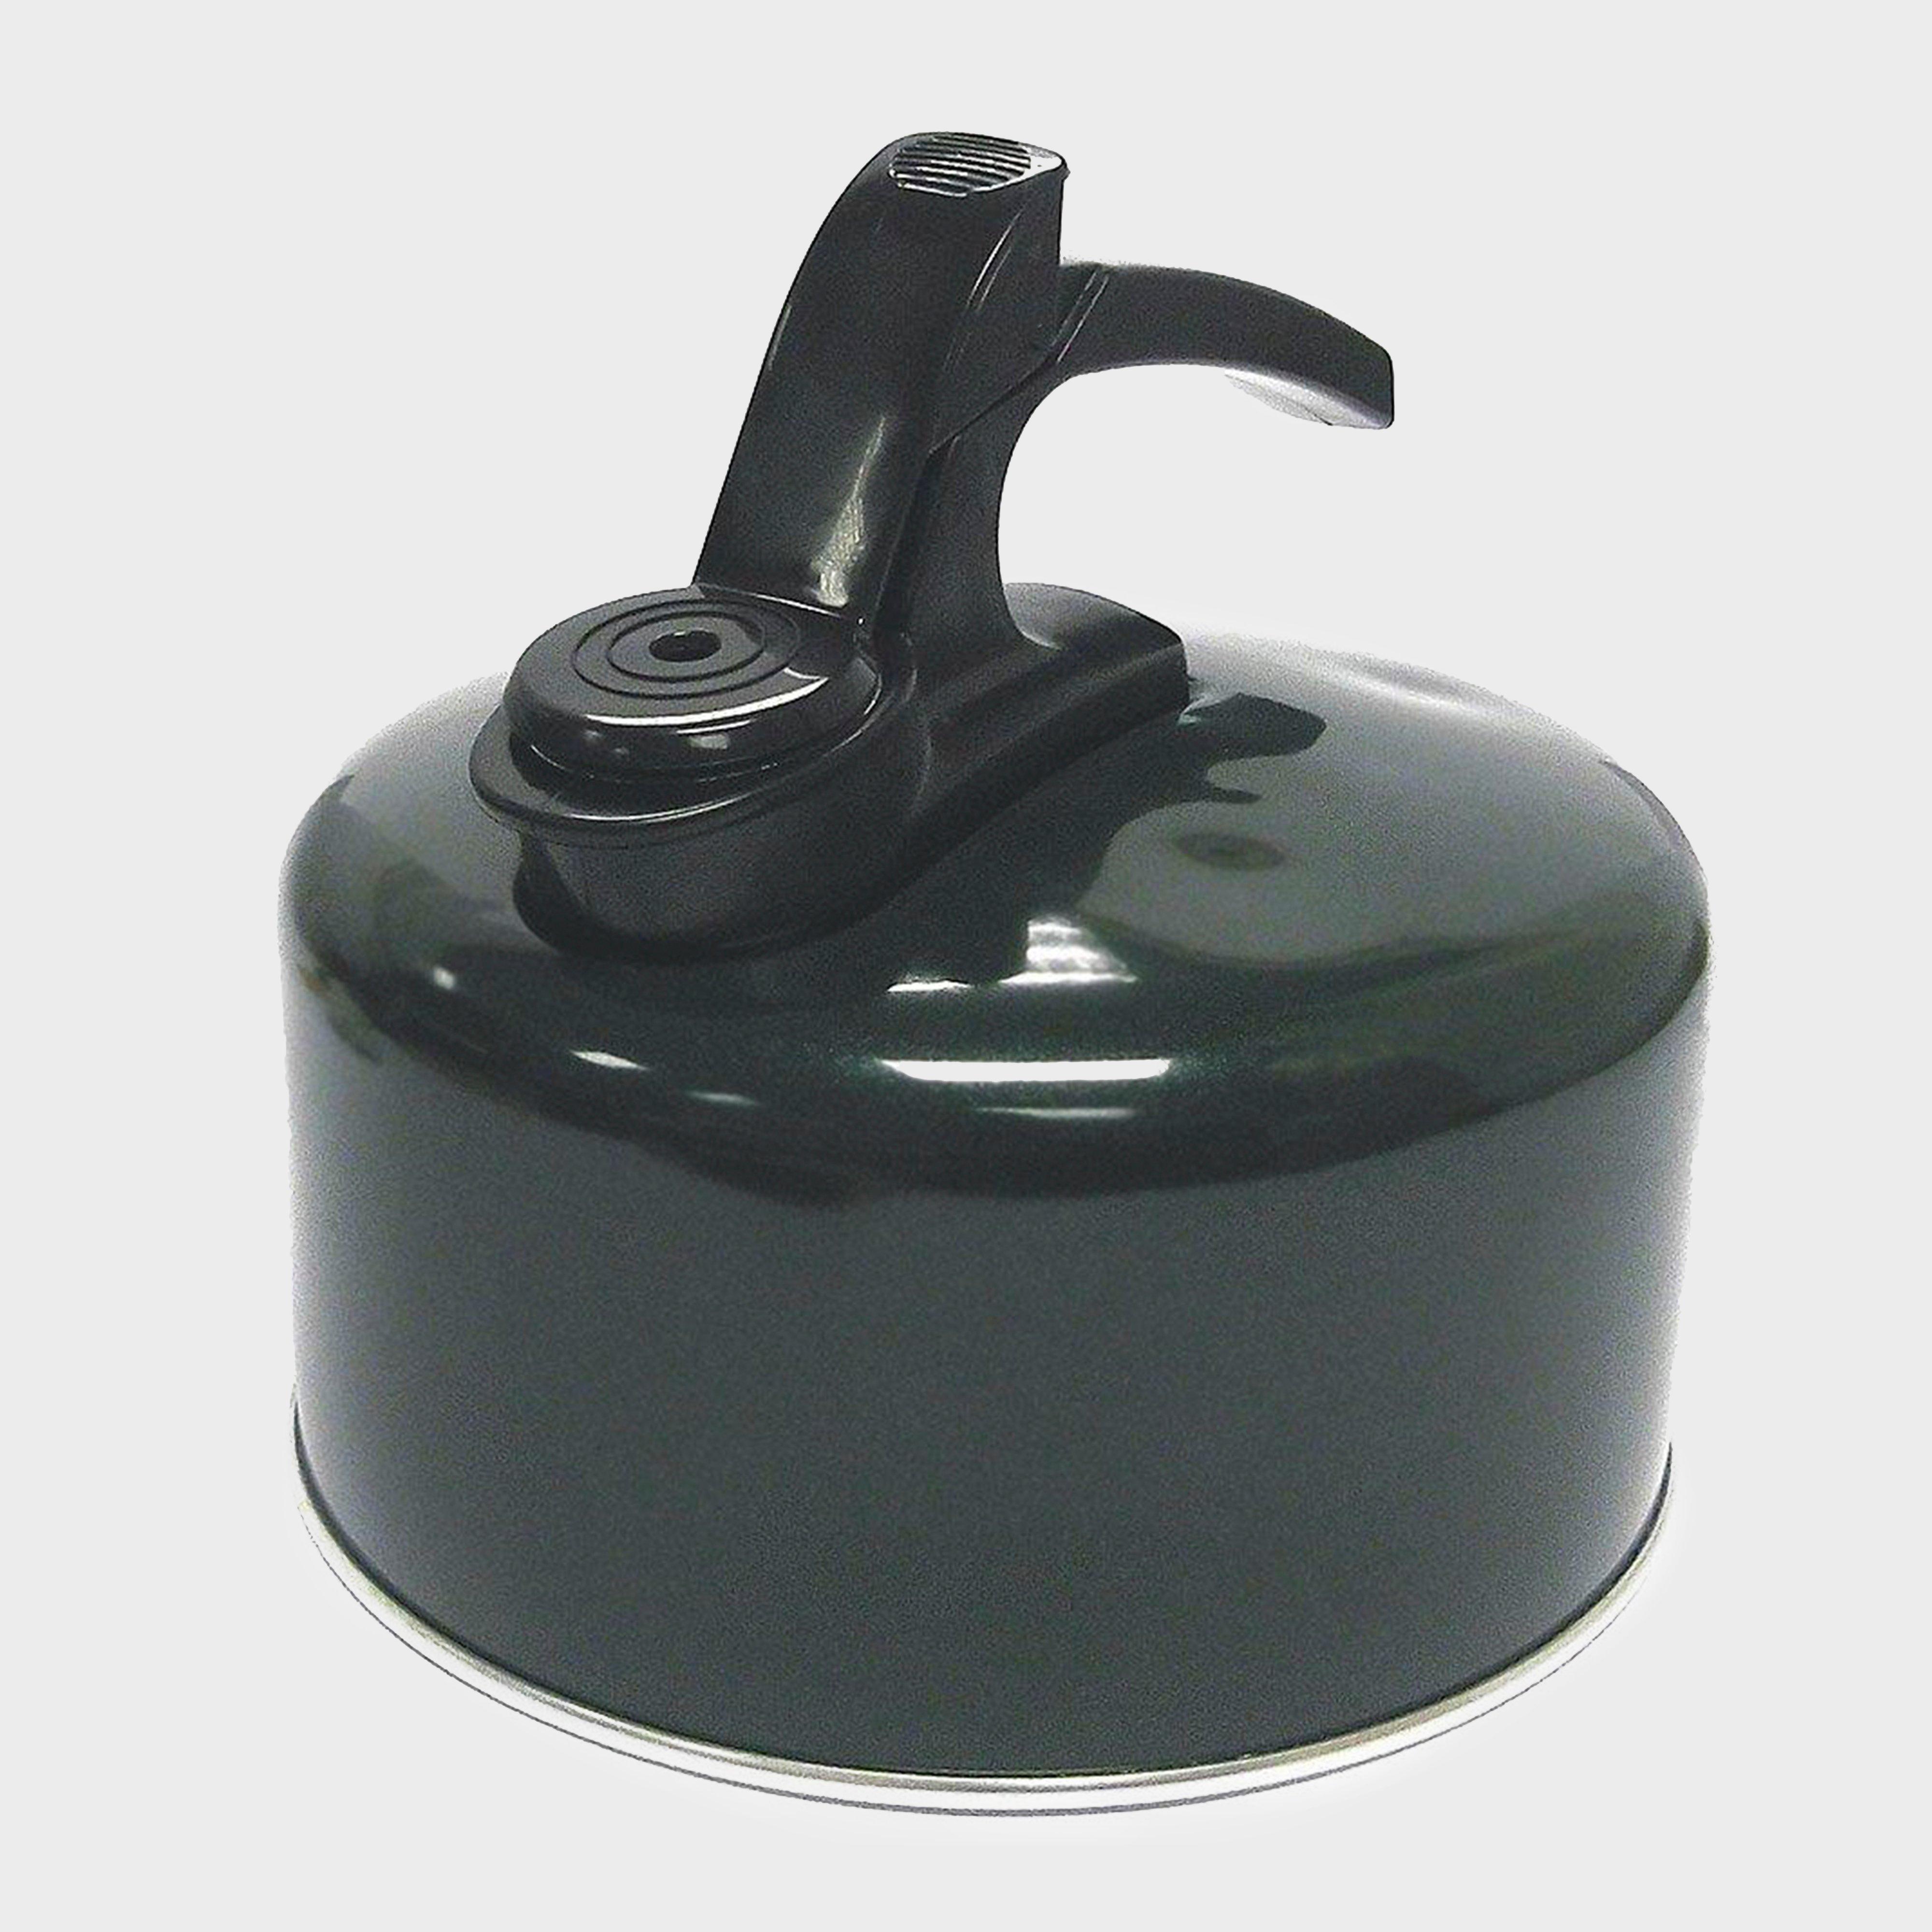 2-Litre Aluminium Whistling Kettle - Black, Black